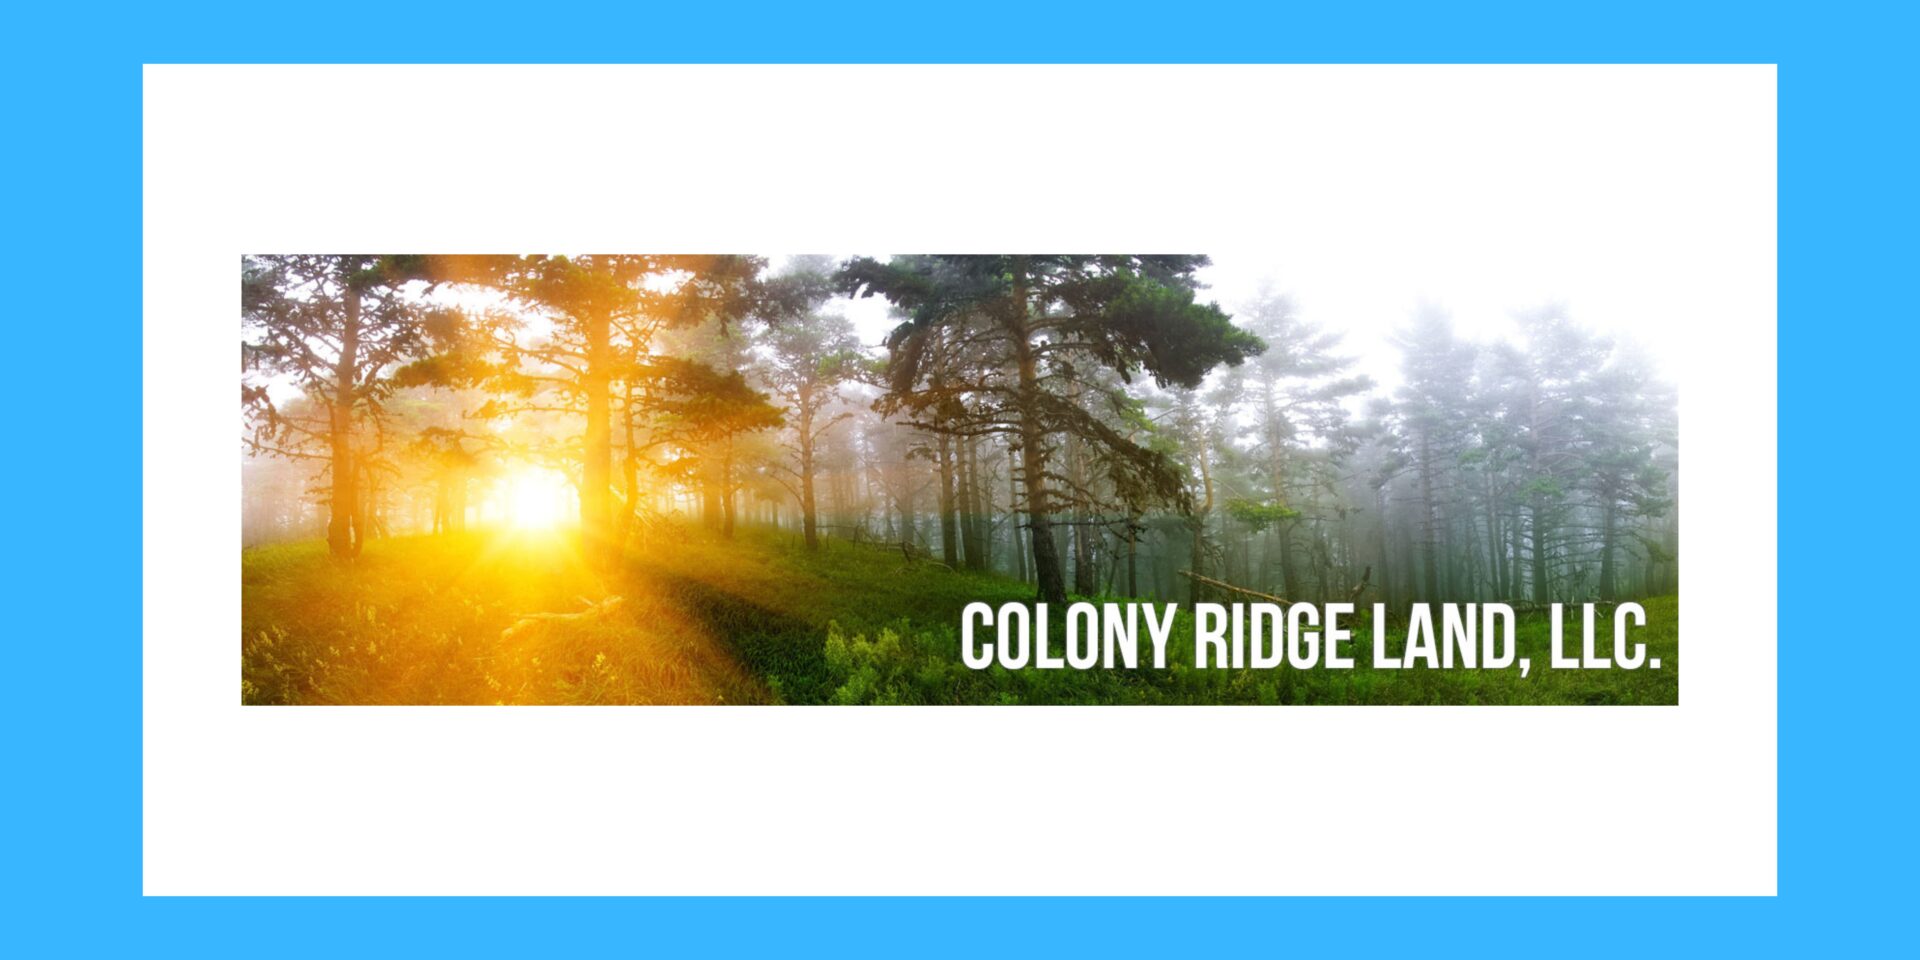 Texas Lender Colony Ridge Sued By CFPB, DOJ